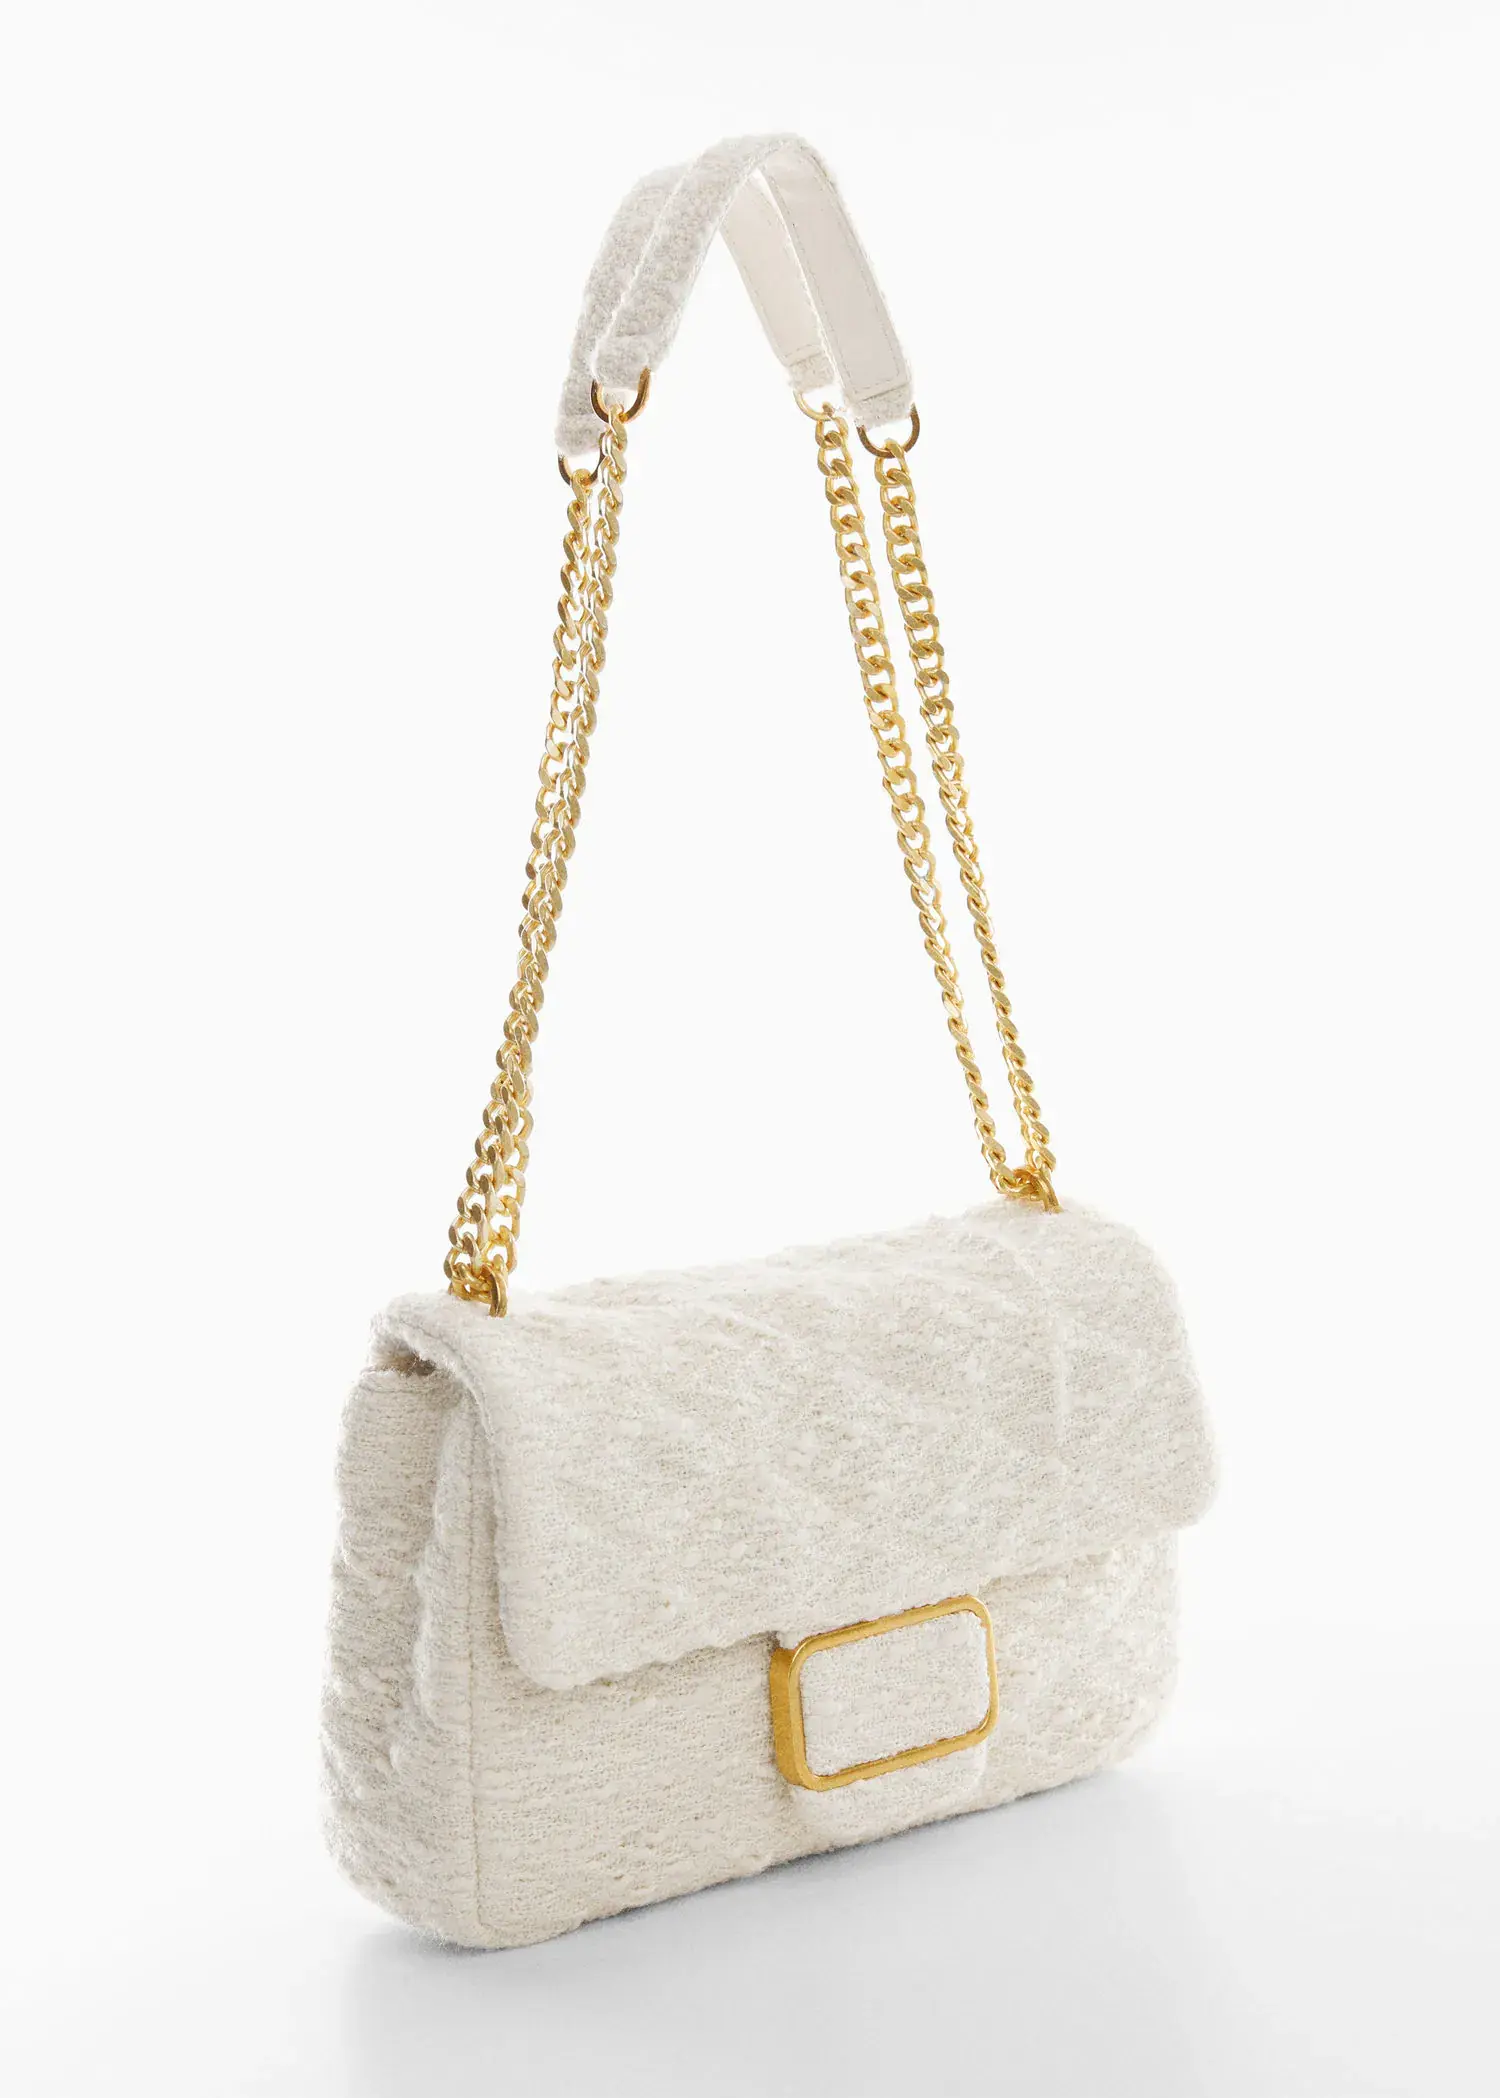 Mango Textured chain bag. a white purse with a gold chain strap. 